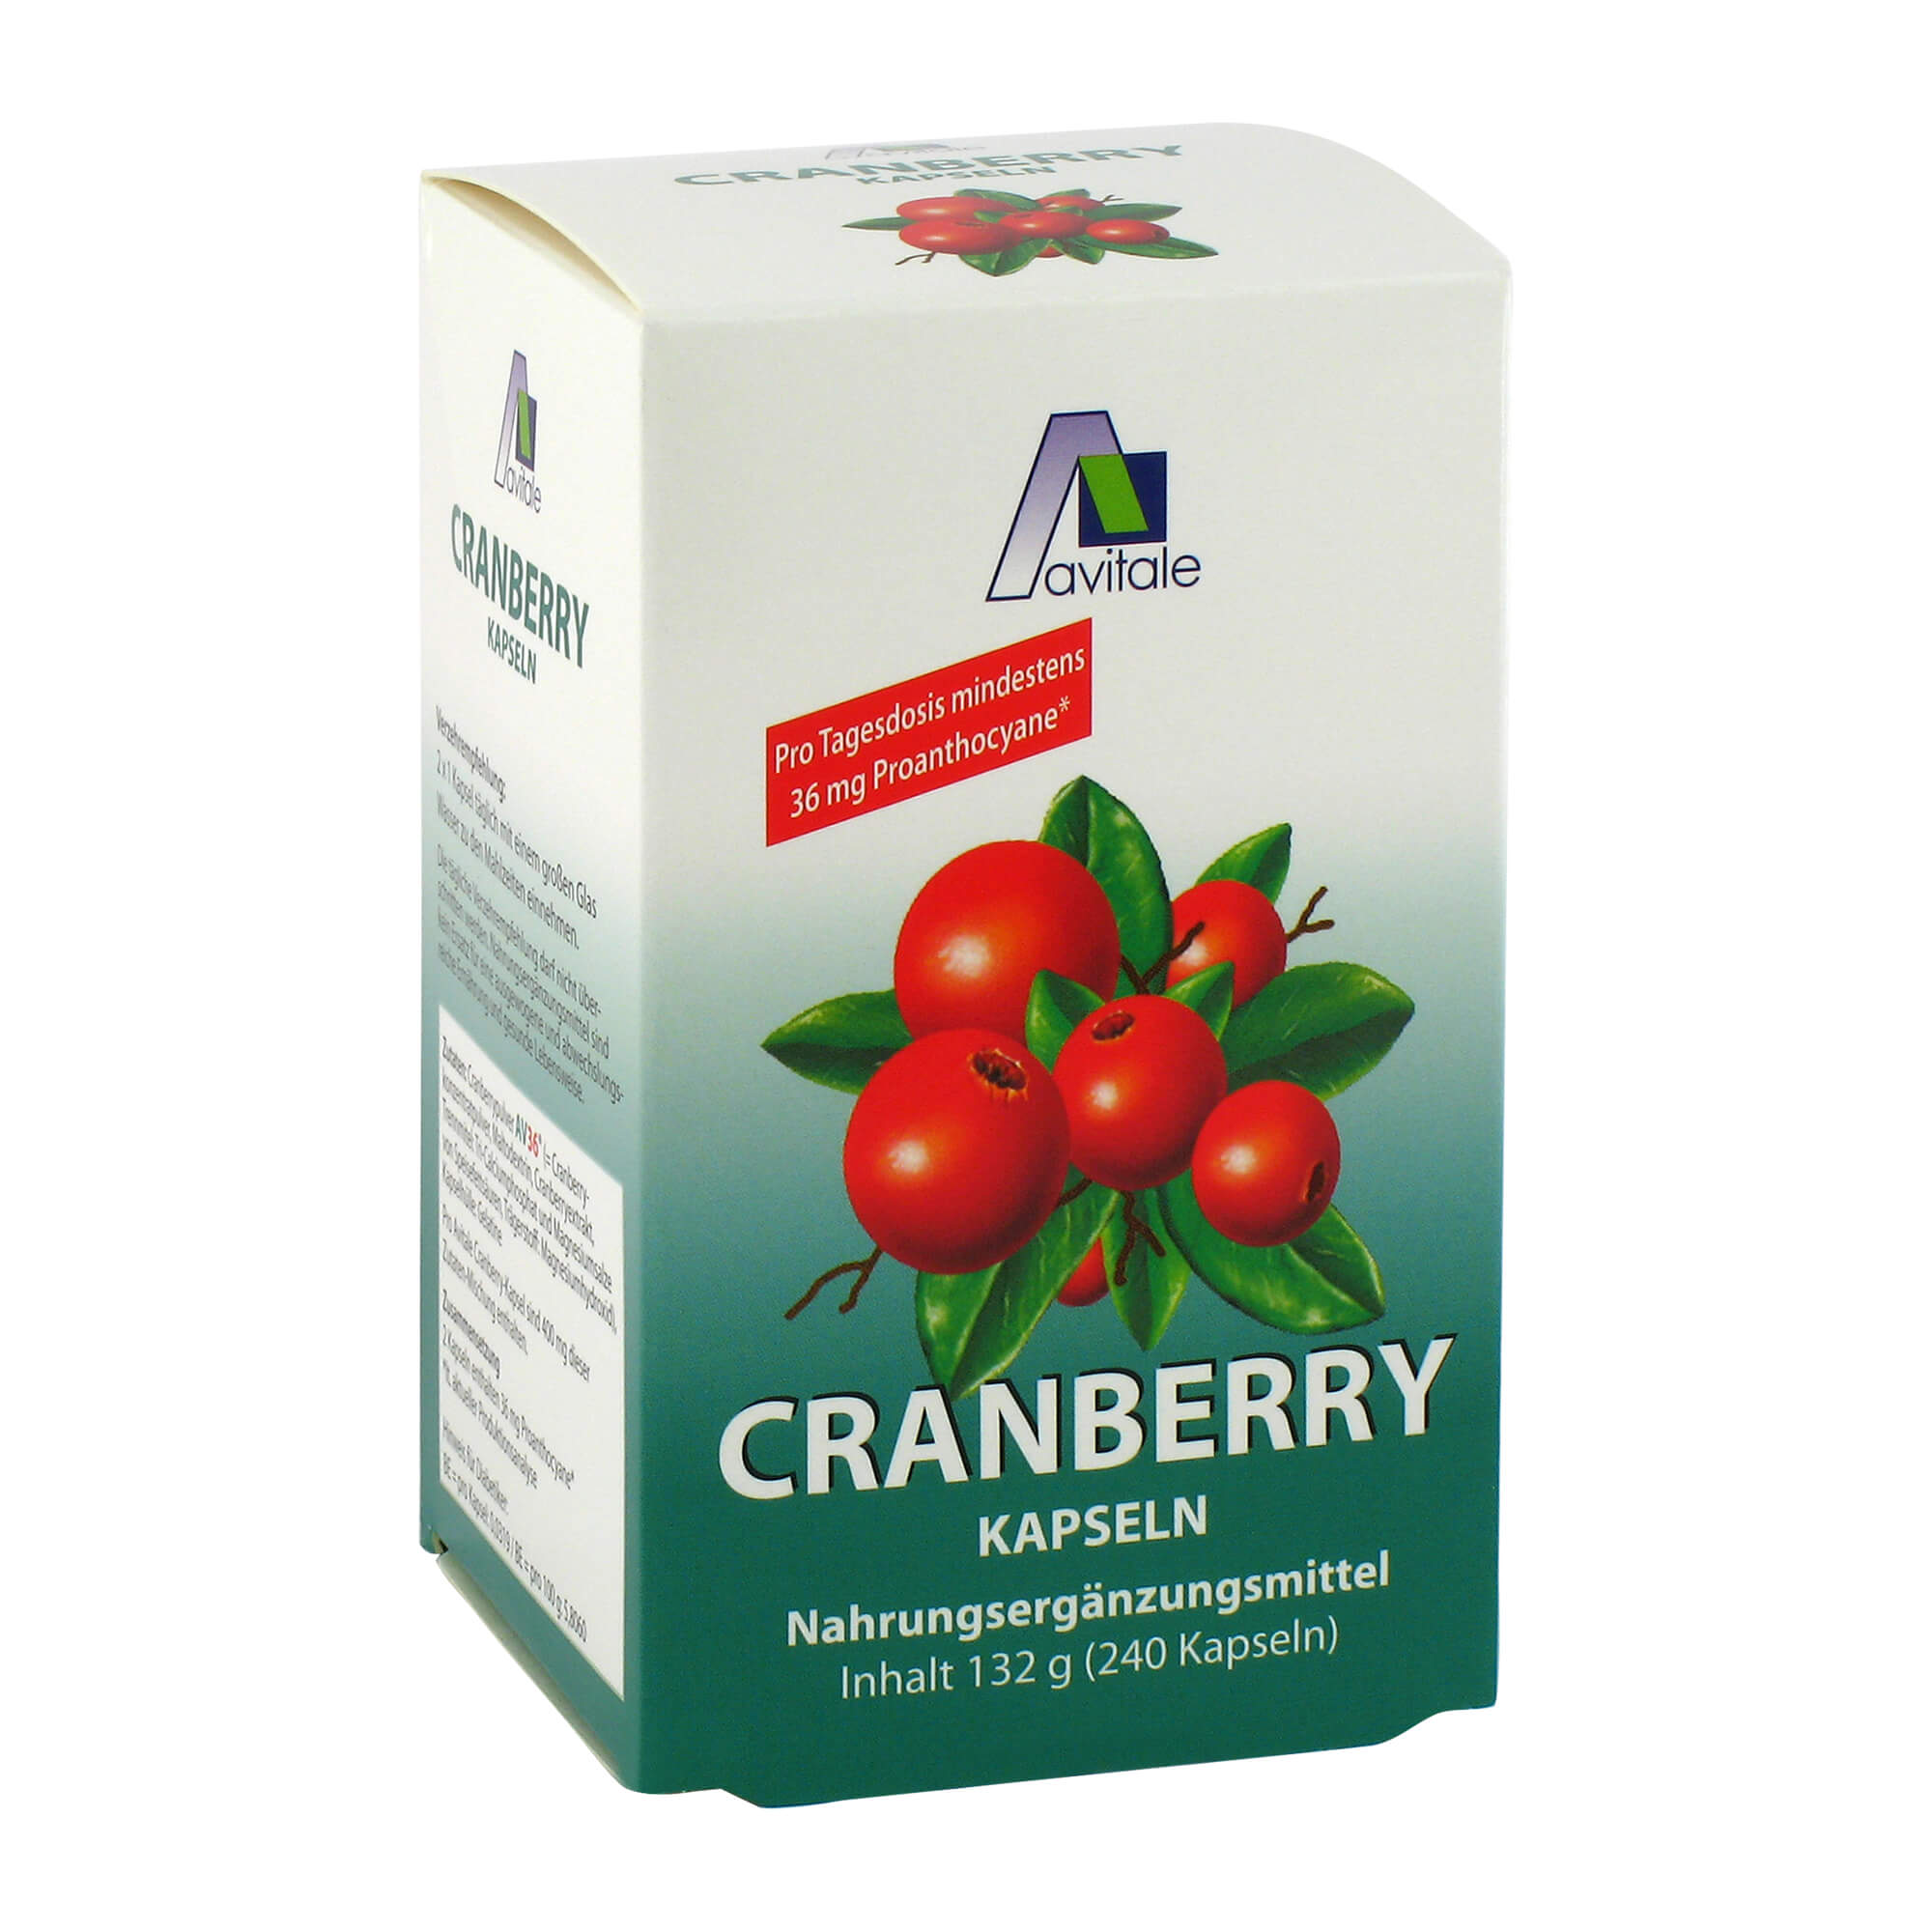 Nahrungsergänzungsmittel mit Cranberrypulver.